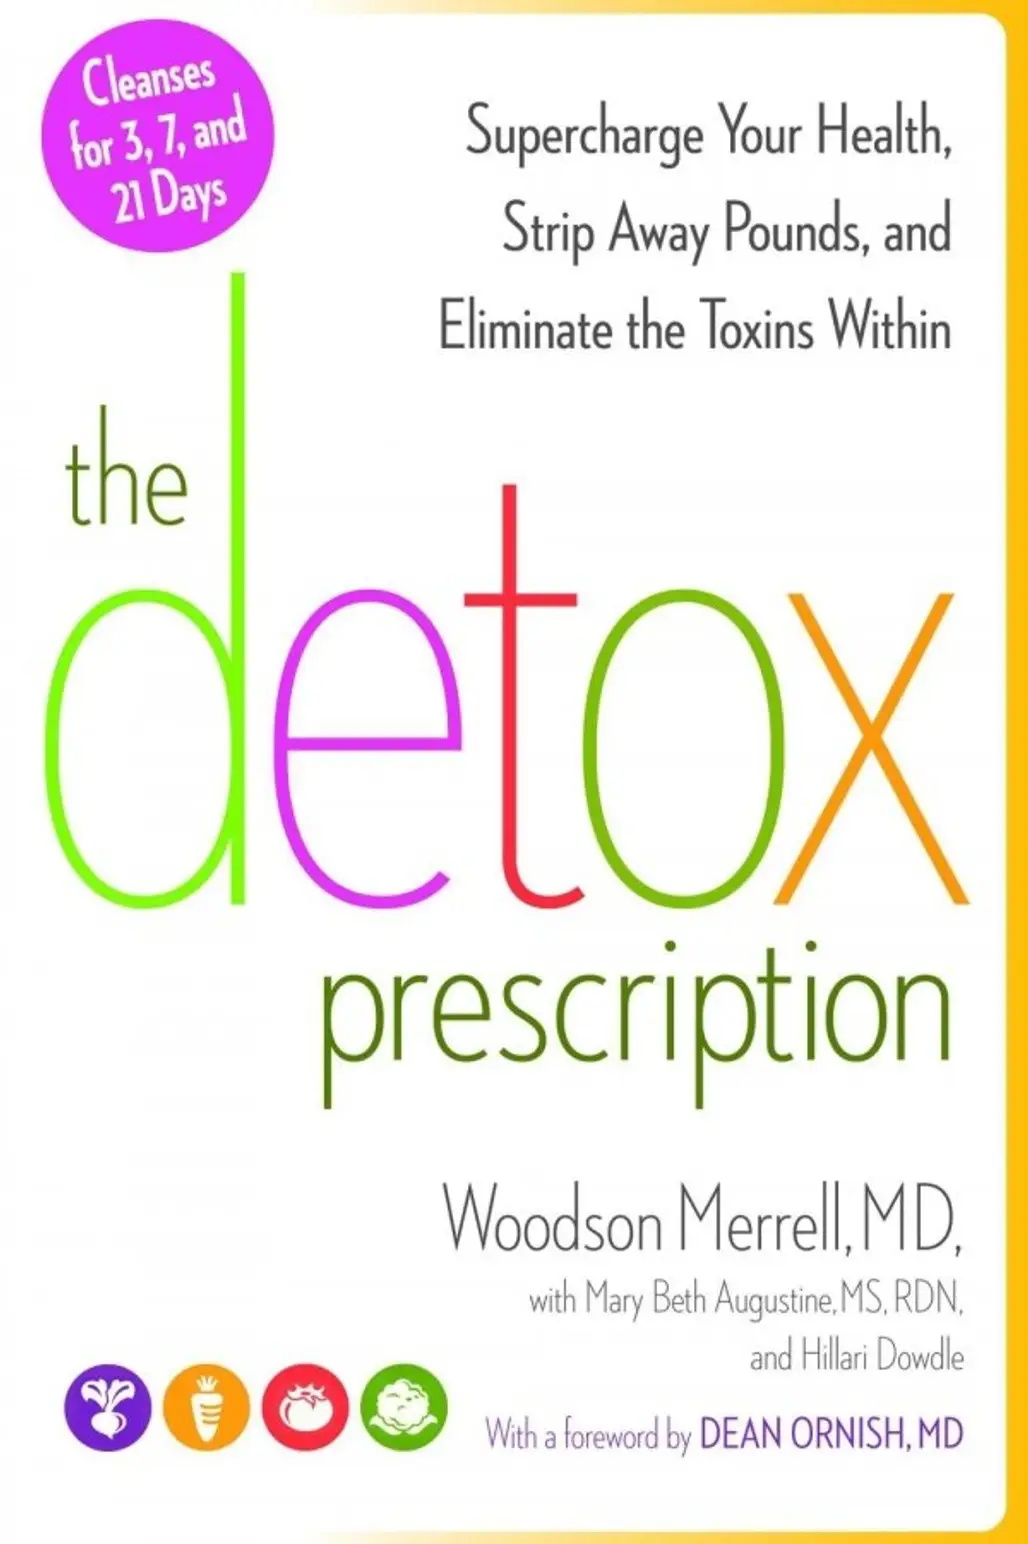 The Detox Prescription by Woodson Merrell, M.D